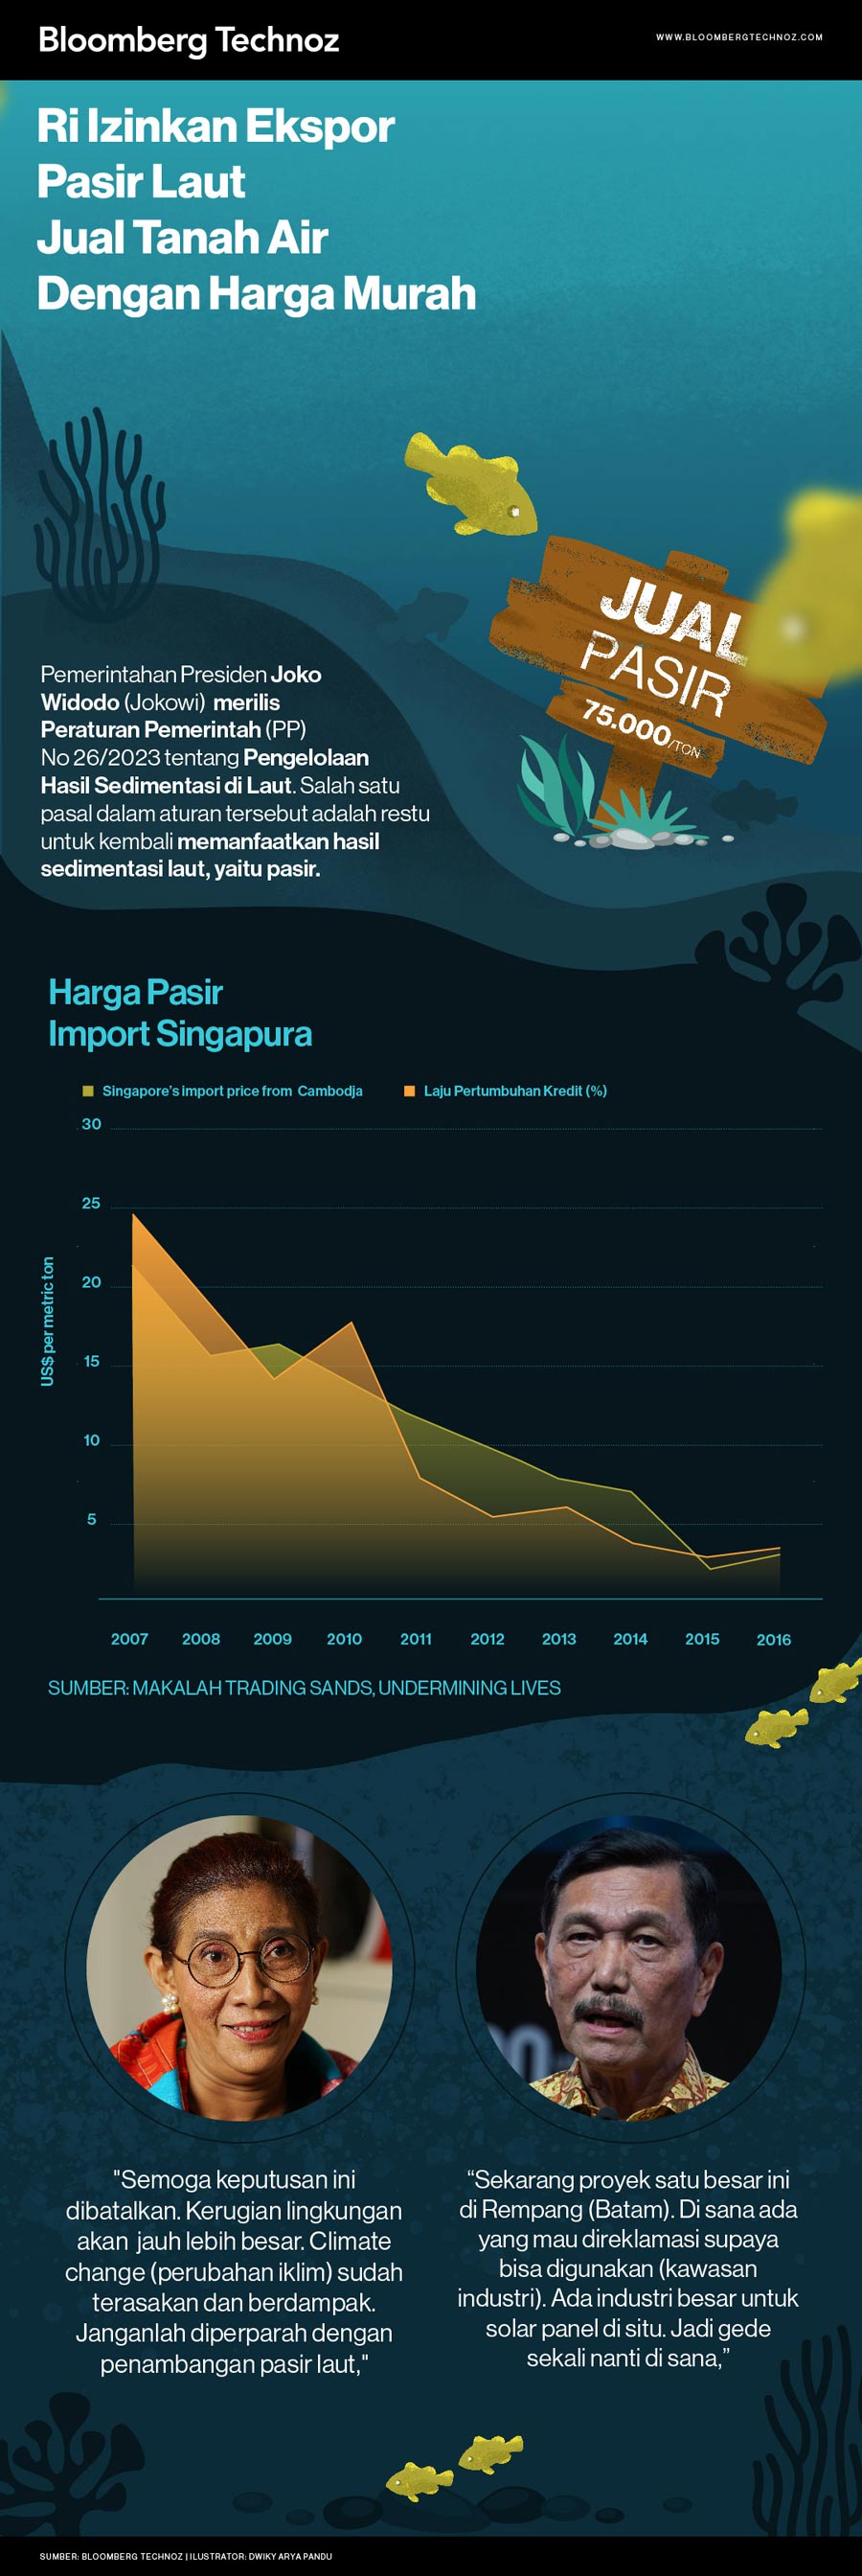 RI Izinkan Ekspor Pasir Laut, Jual Tanah Air dengan Harga Murah (Infografis/Bloomberg Technoz)